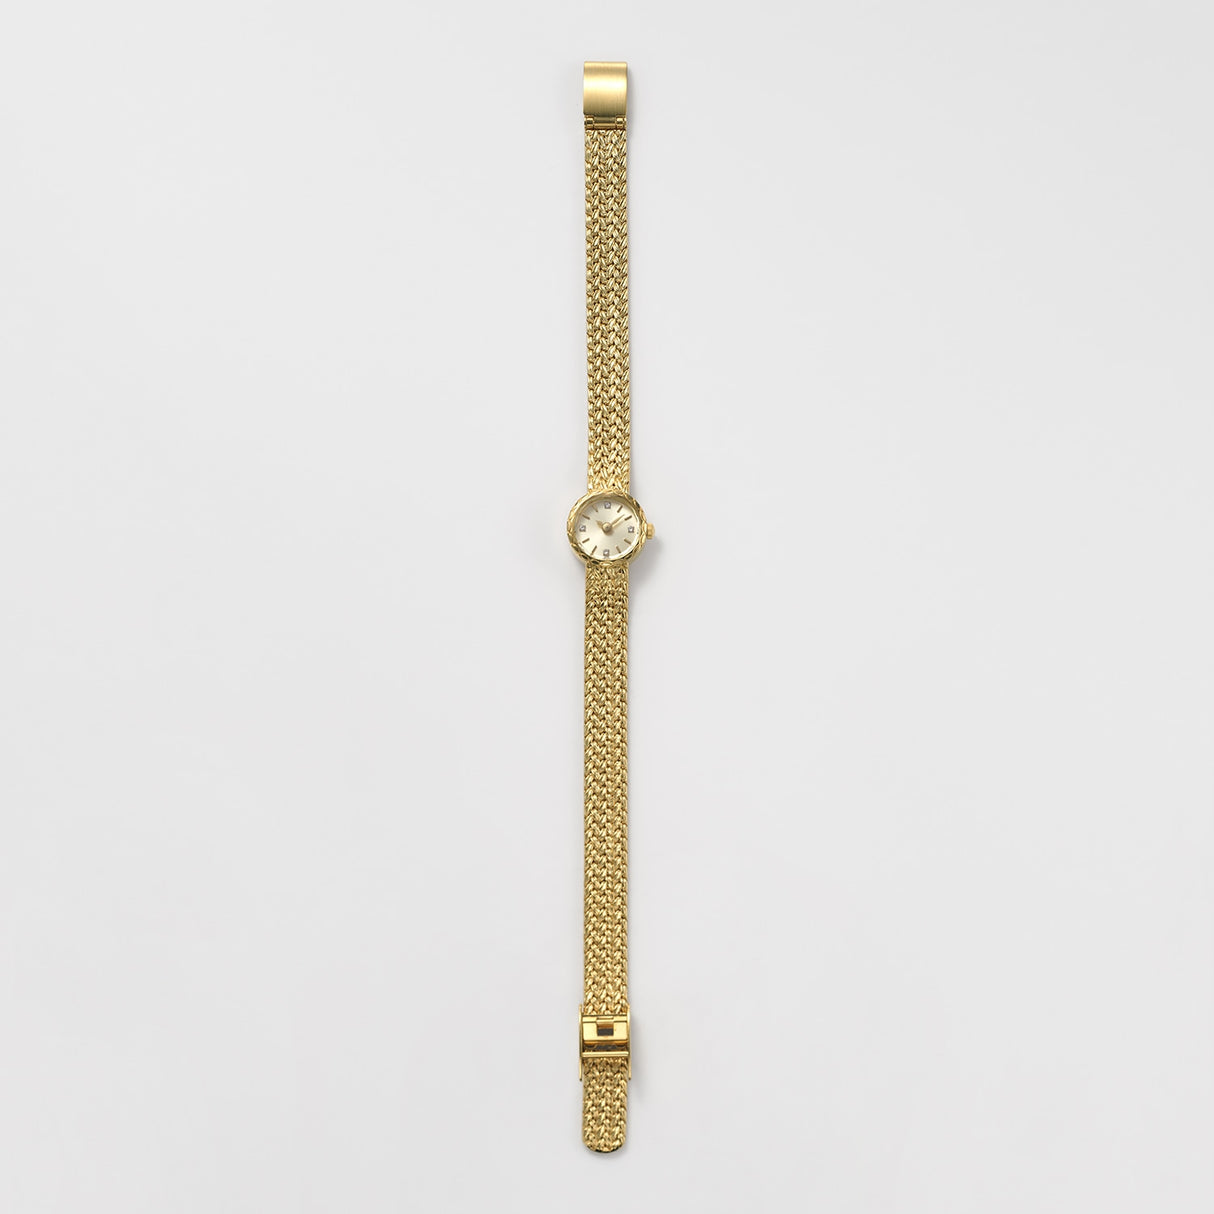 日本 agete阿卡朵 典藏款 圆形钻石表盘 精工机芯 防水镀金 手表